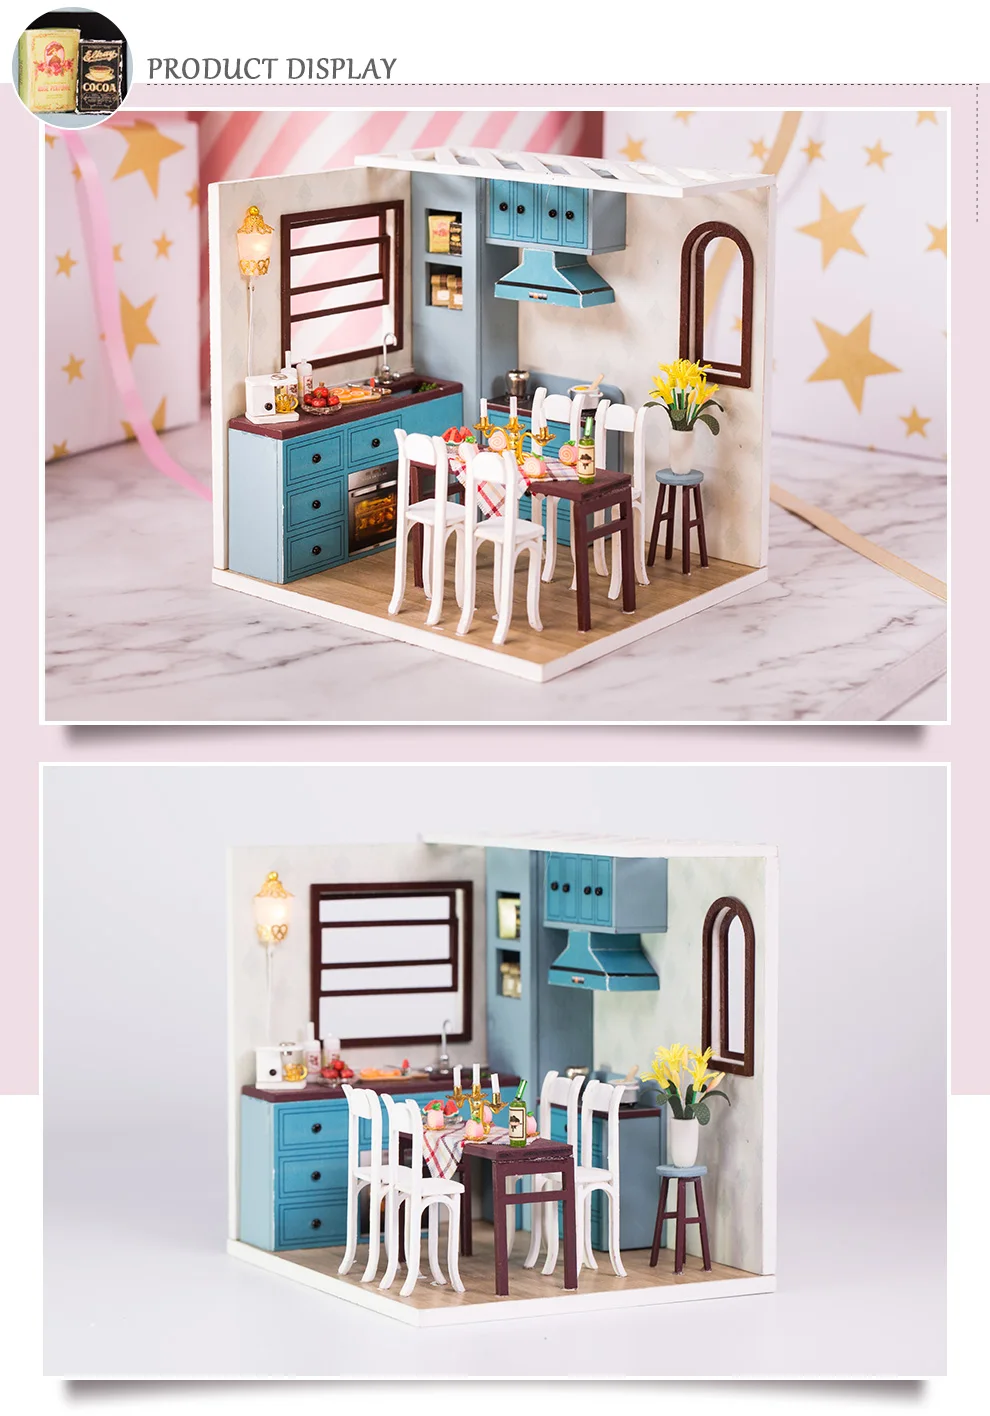 Кукольный домик Cutebee миниатюрная мебель кукольный домик DIY Миниатюрные домики комнаты Каса игрушки для детей DIY кукольный домик M10F